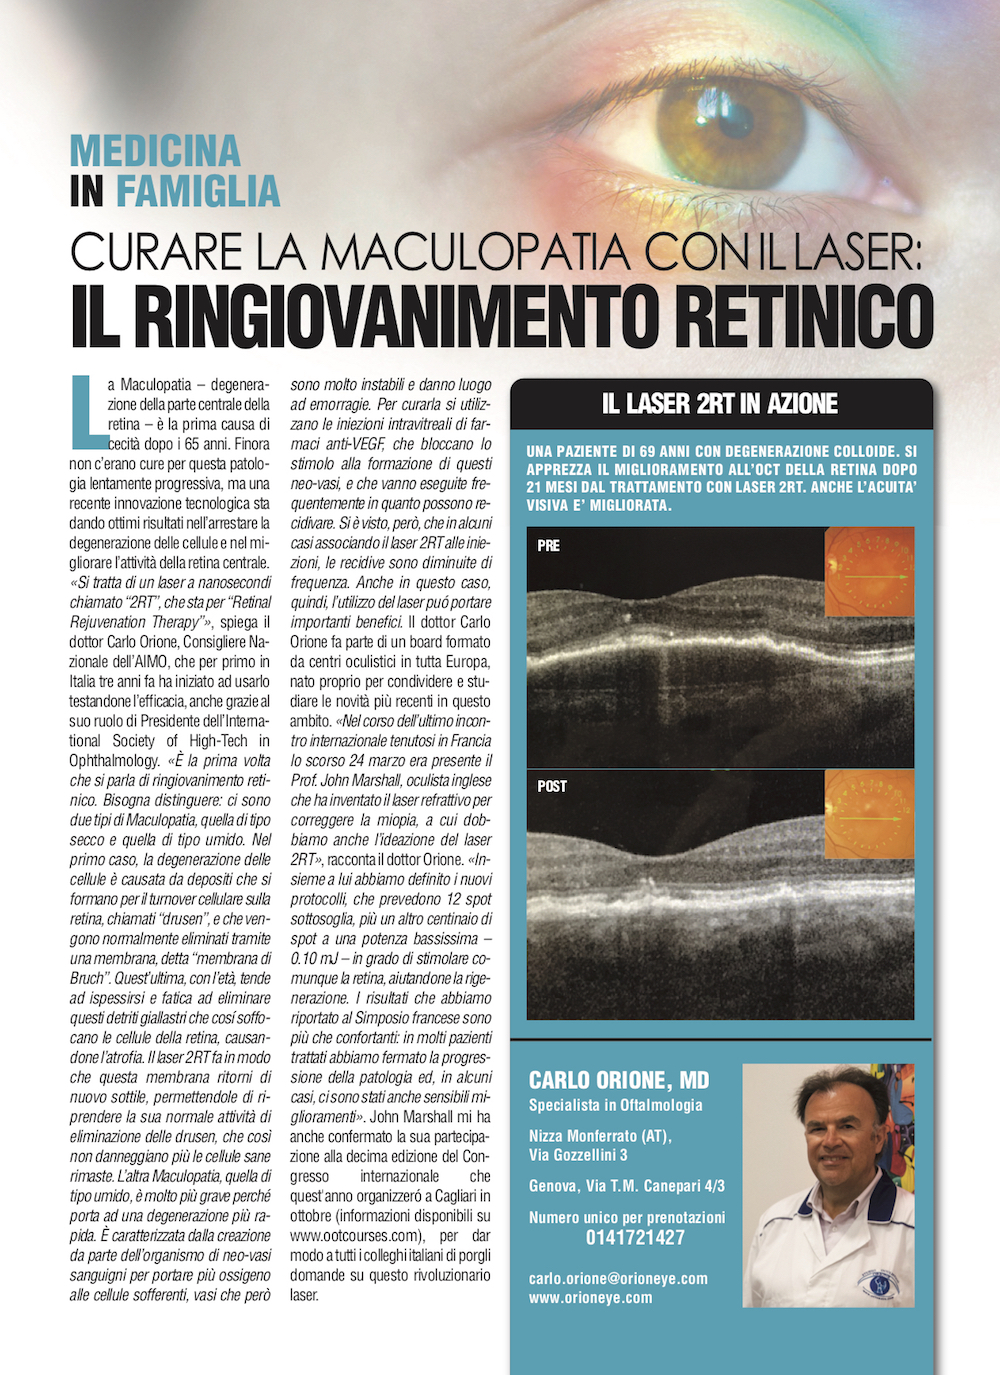 Curare la maculopatia conillaser: il ringiovanimento retinico